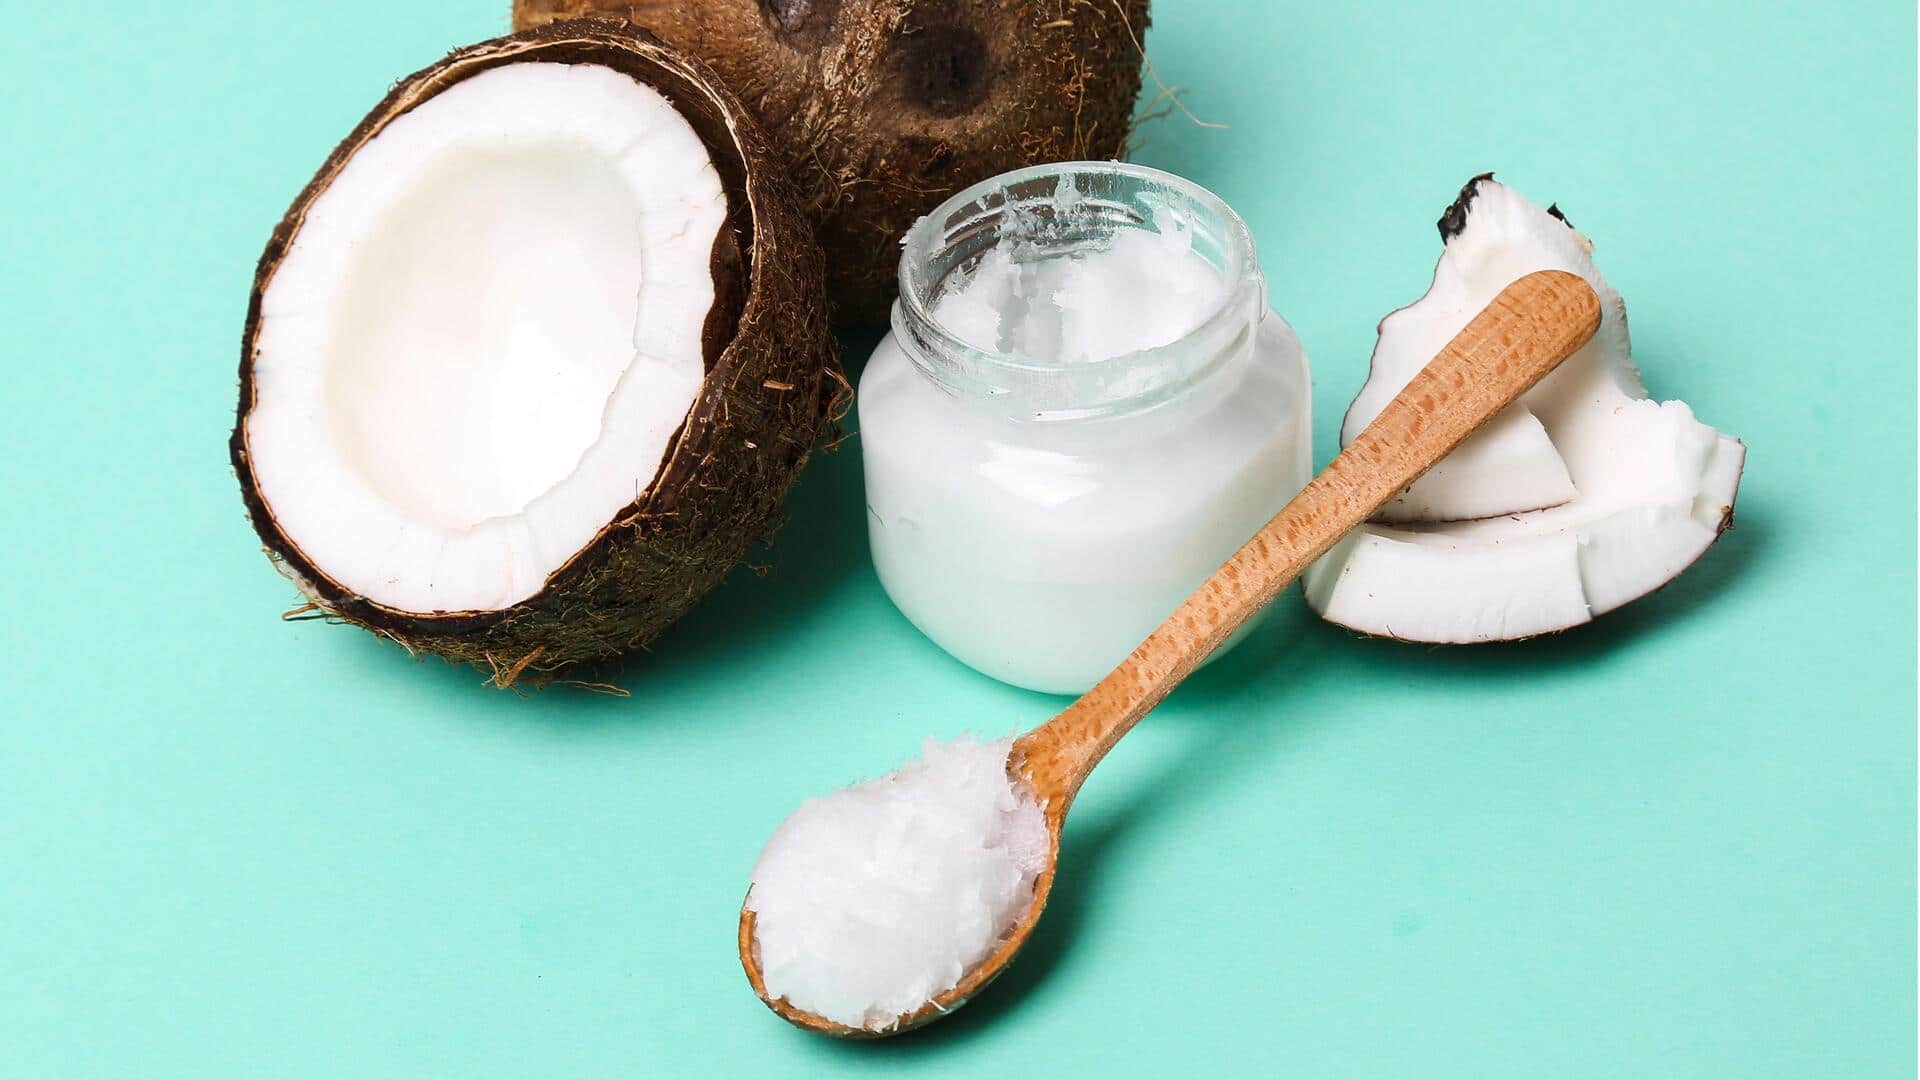 त्वचा की देखभाल के लिए घर पर बनाएं नारियल तेल से फेस मास्क, जानिए प्रक्रिया 